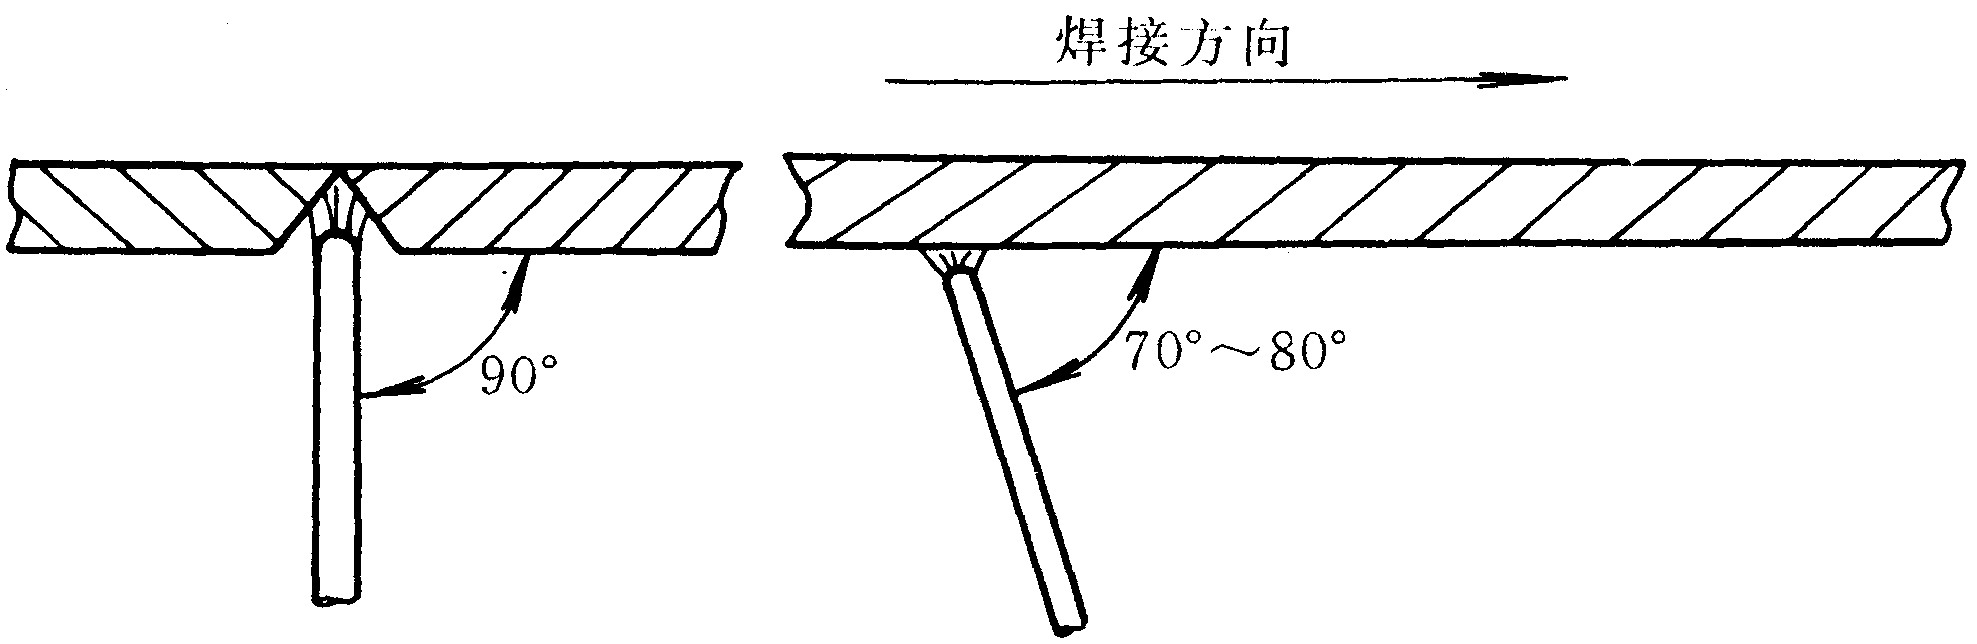 四、板对接仰焊单面焊双面成形技术